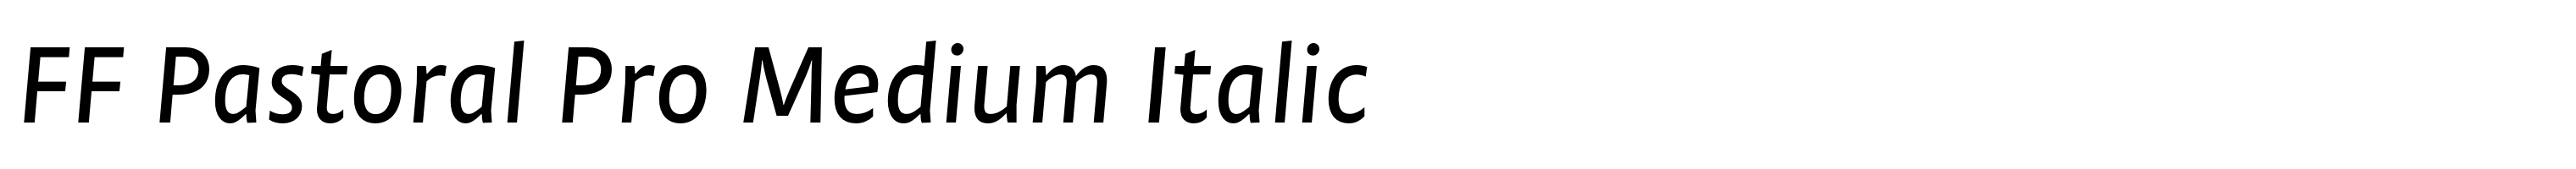 FF Pastoral Pro Medium Italic